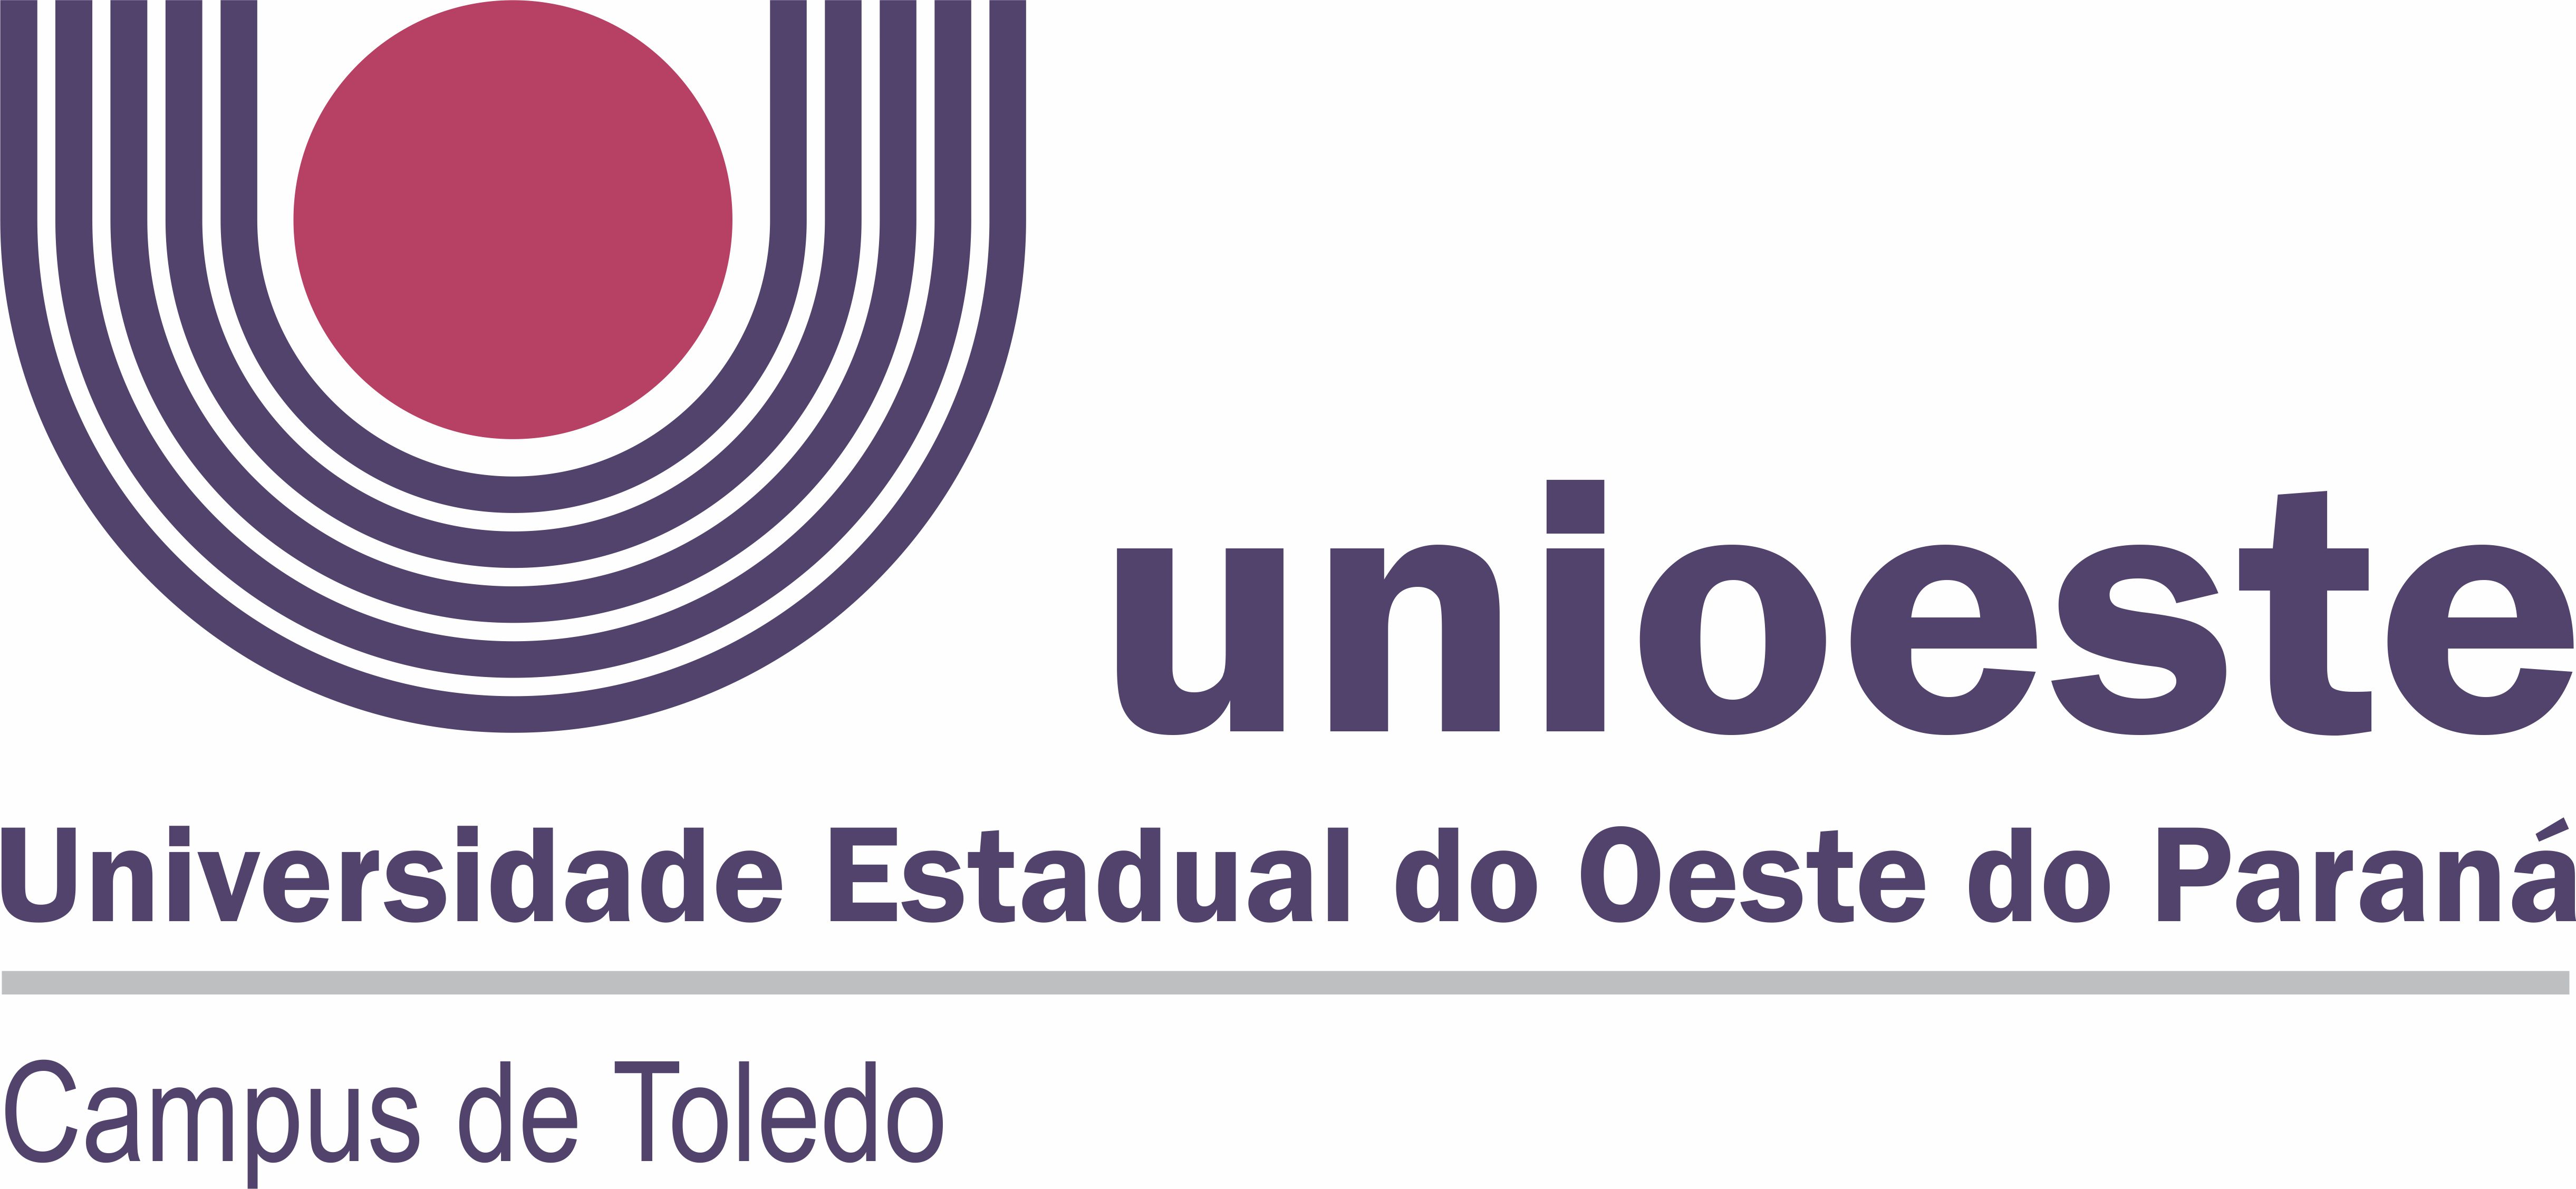 Logotipo_Unioeste_CAMPUS_TOLEDO.jpg